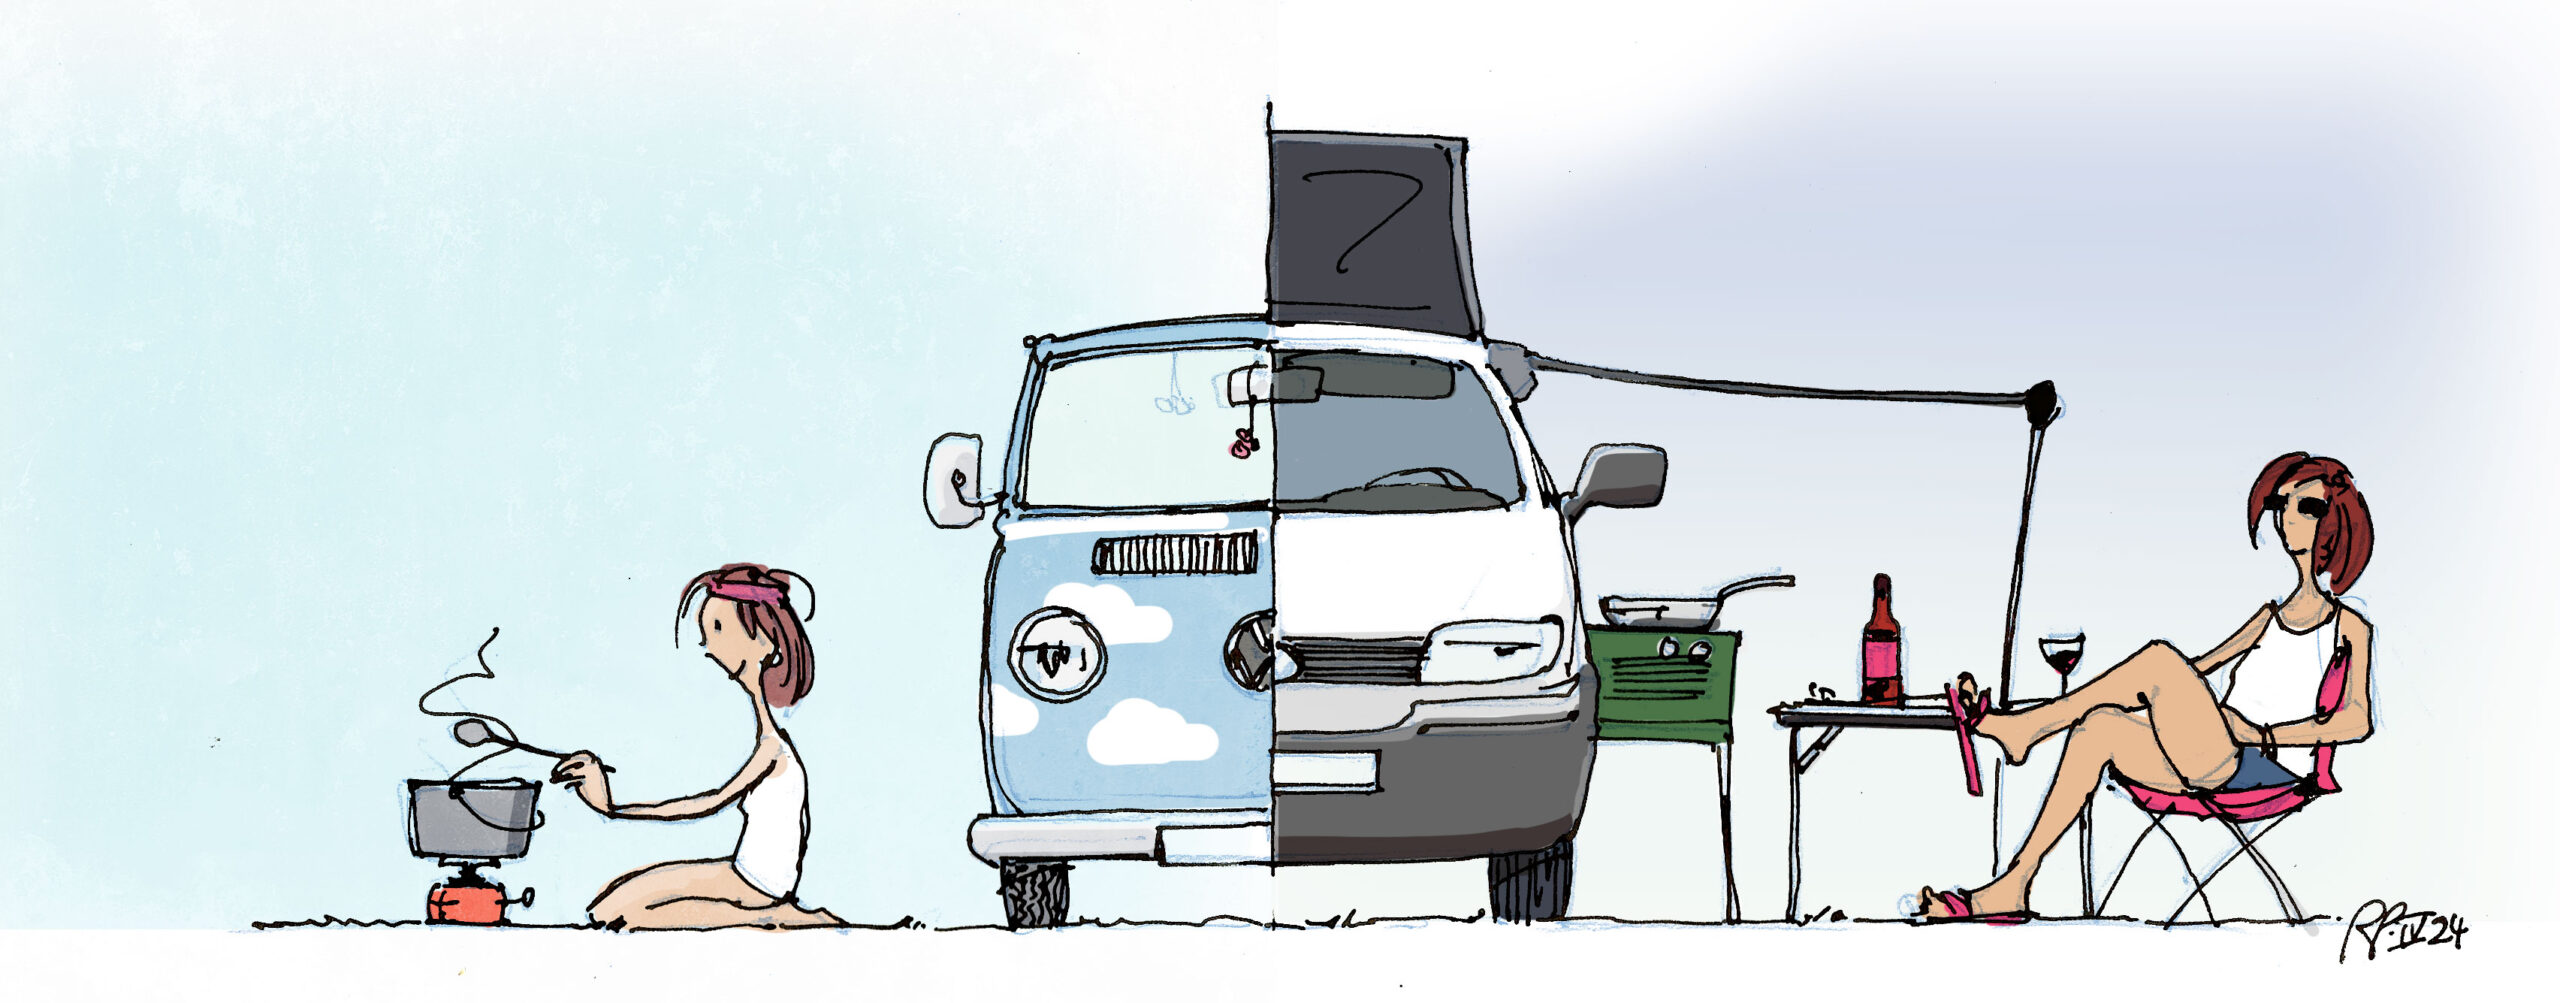 Illustration: links Suse in jung neben einem himmelblauen alten VW-Bus, rechts die heutige Supersuse neben einem nagelneuen Bulli